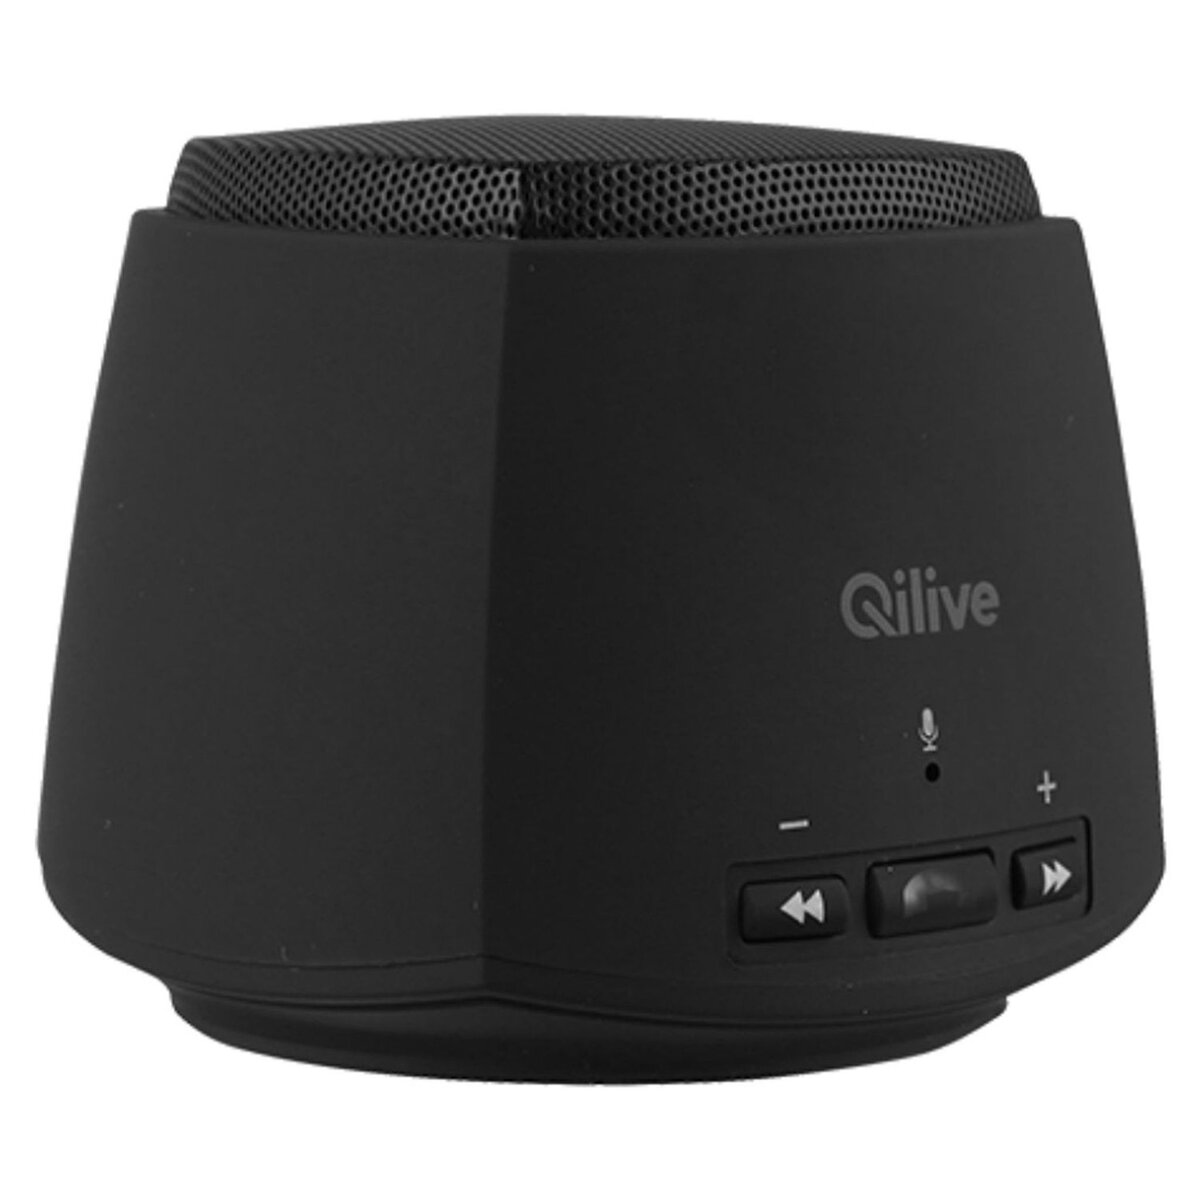 QILIVE Q1777 - Noir - Enceinte portable